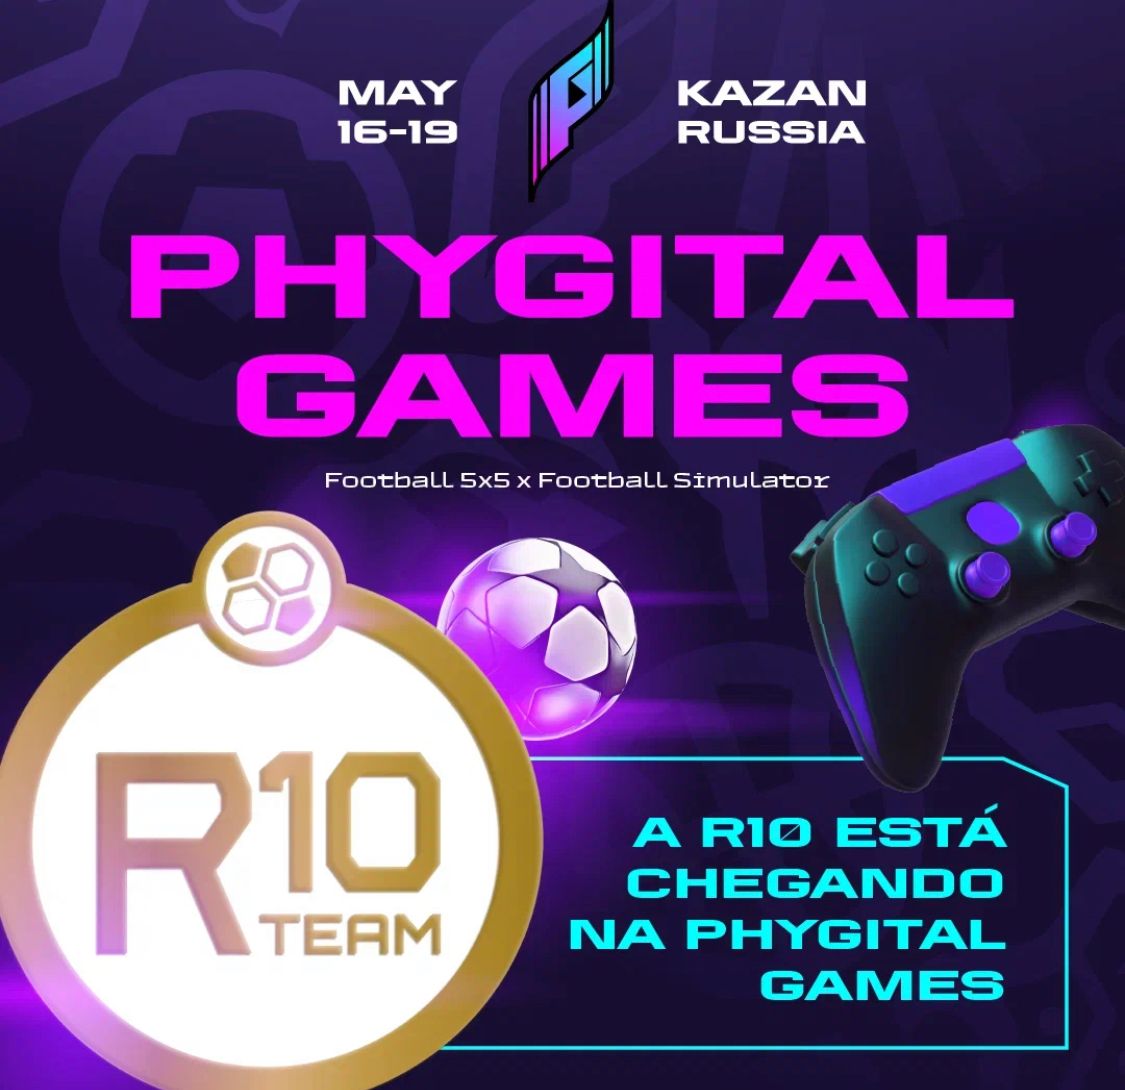 R10 Team on X: O torneio Phygital Games começa no dia 16/5, e a R10 está  no Grupo A. O jogo de estreia será contra a equipe OBILIC da Sérvia e está